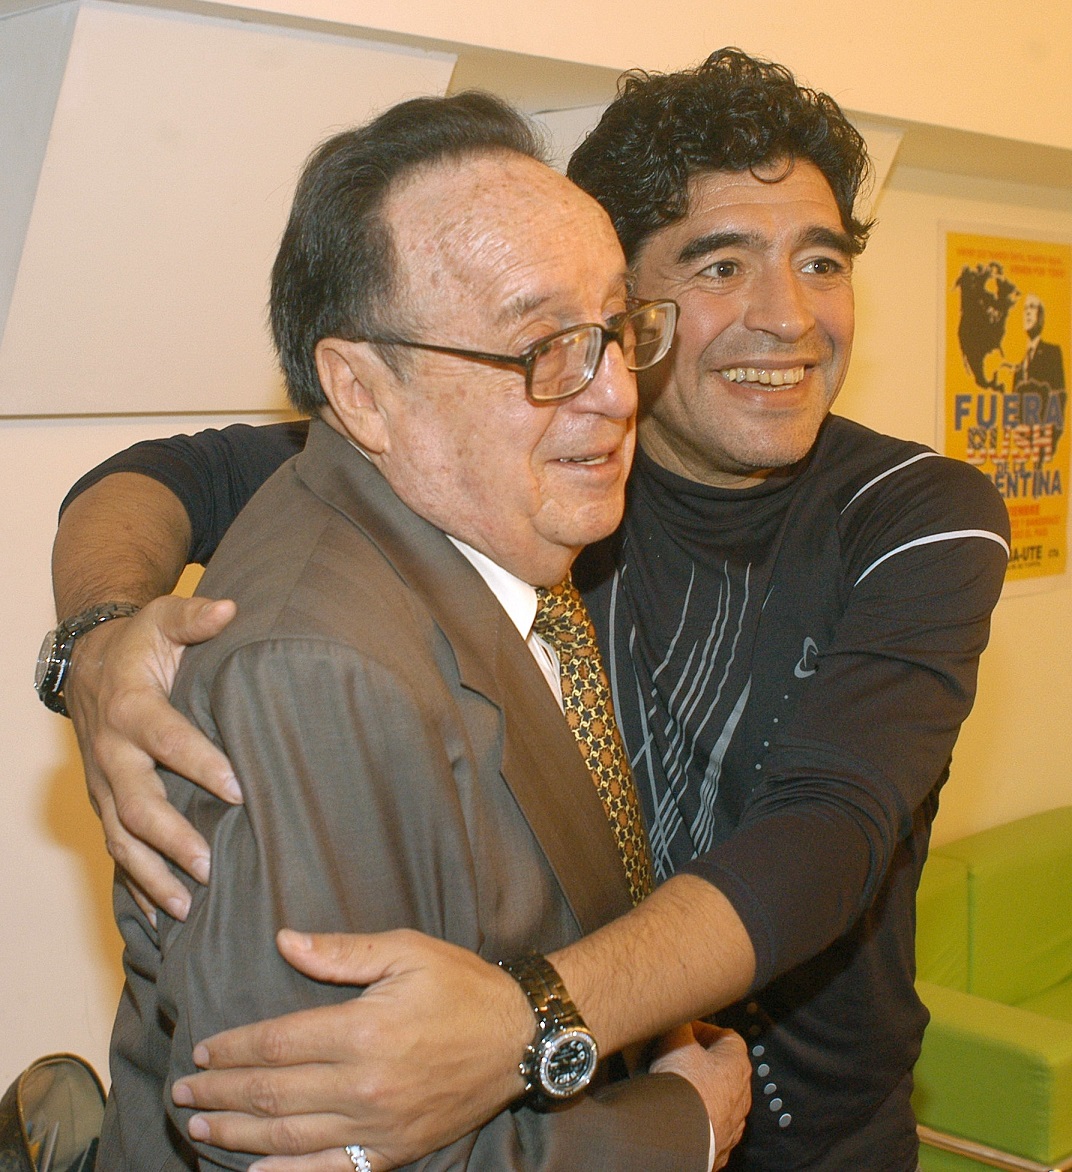 El día que Maradona conoció a Pelé: cómo se gestó la histórica foto de 1979  - LA NACION